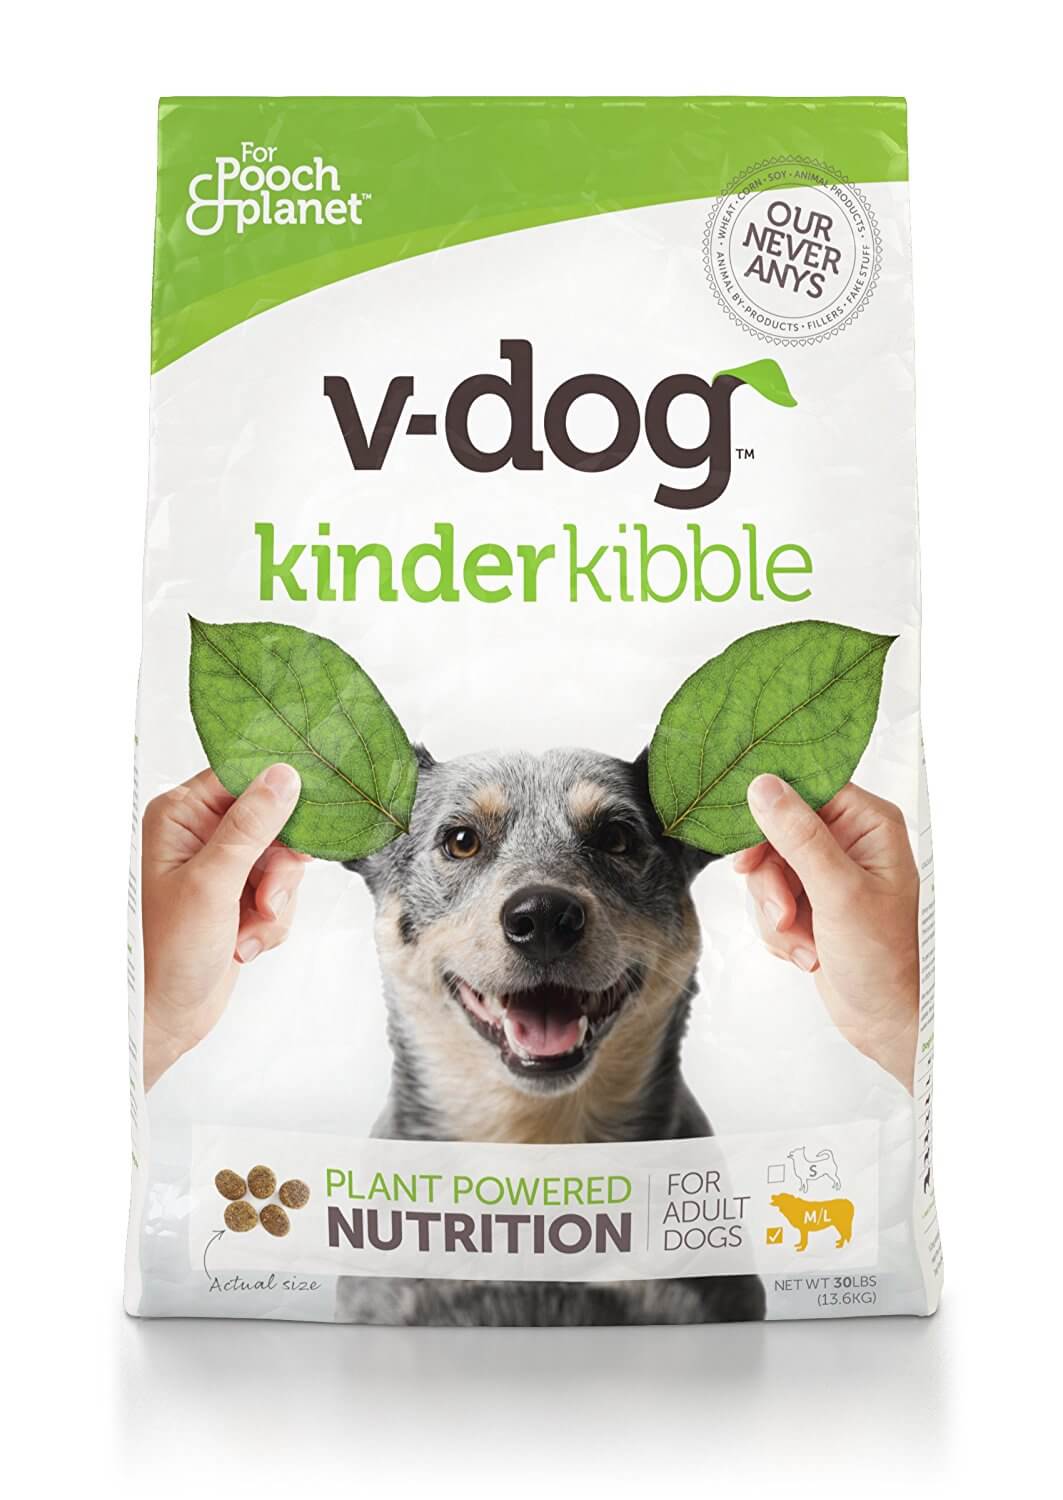 Vegan Dog Food Brands and Recipes | The Green Loot #vegan #dogfood